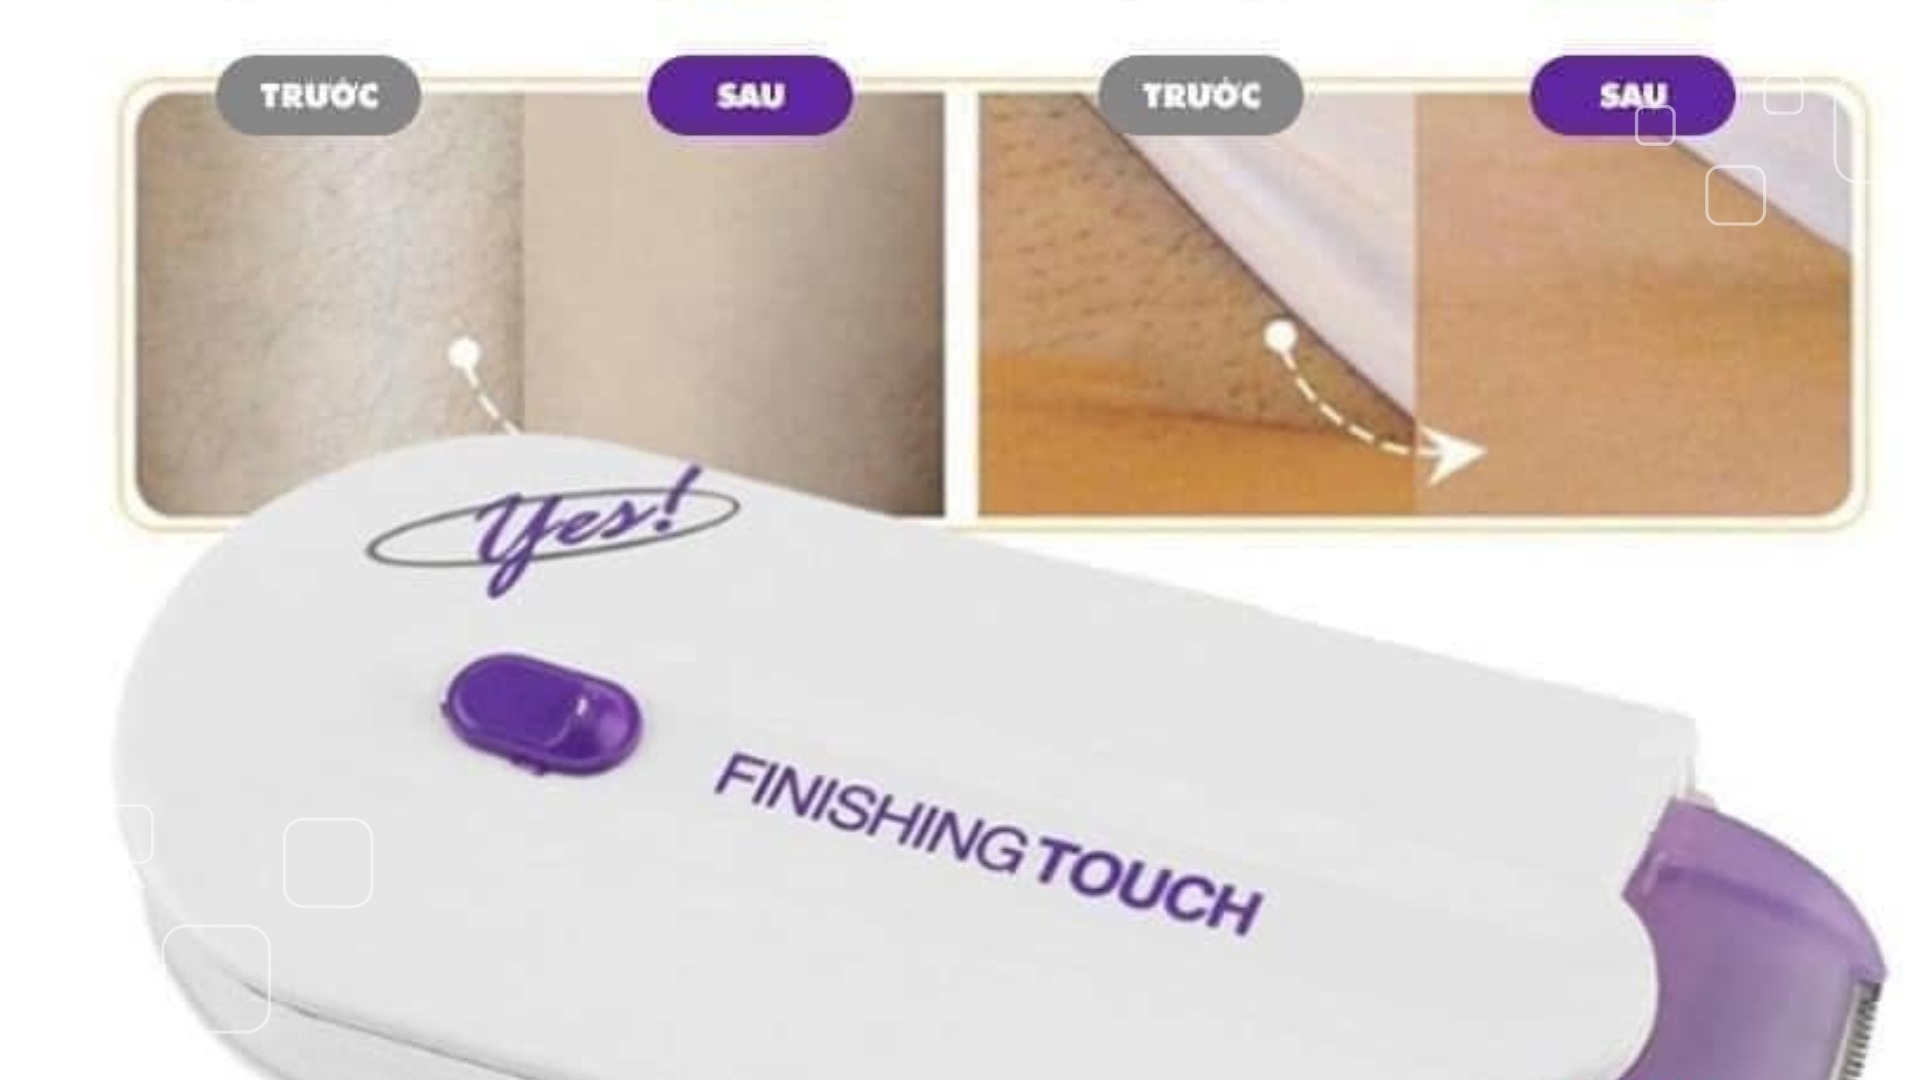 Lưu ý khi sử dụng máy triệt lông Yes Finishing Touch